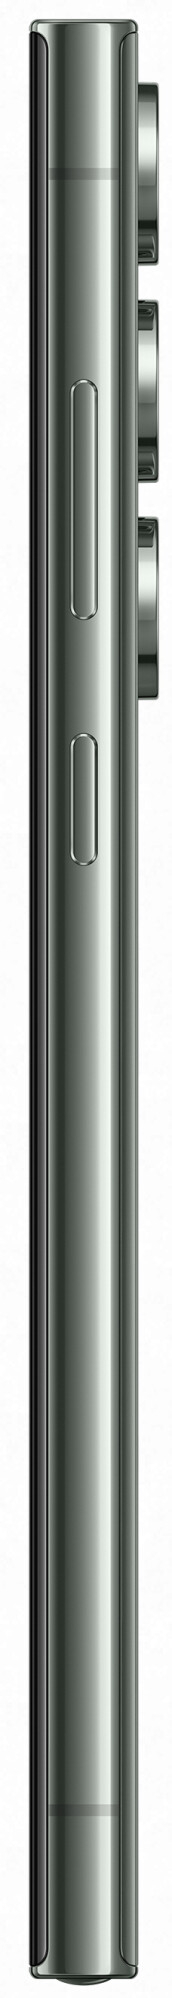 Смартфон Samsung Galaxy S23 Ultra 12/256GB (ЕАС) Зеленый